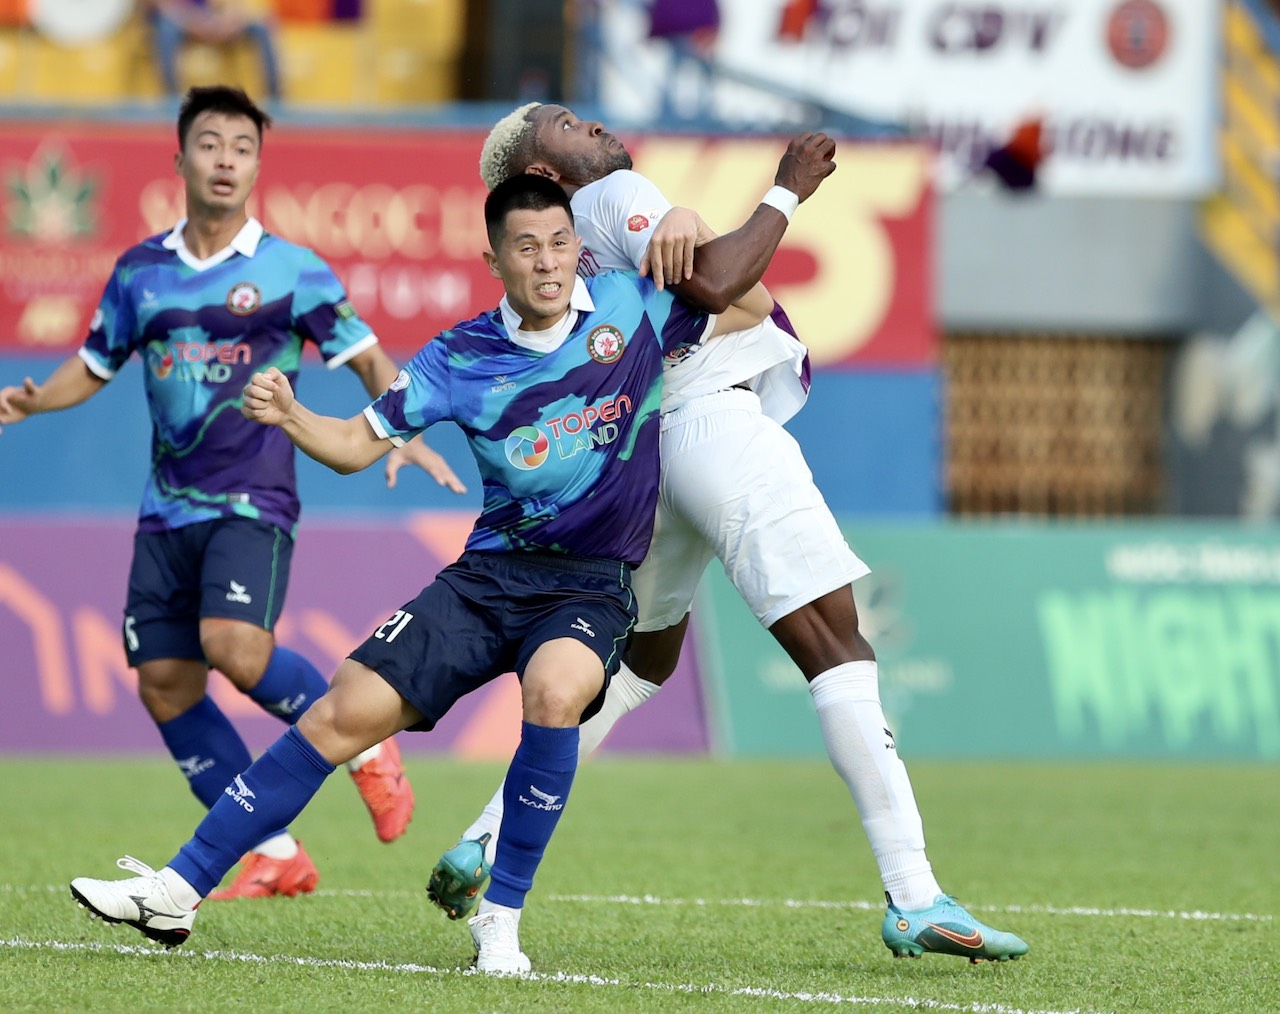 Vắng mặt ở vòng 6 sau khi tái phát chấn thương, nhưng trong các trận đấu gần đây trung vệ Đình Trọng đã kịp trở lại để gánh vác hàng thủ đội nhà Bình Định.